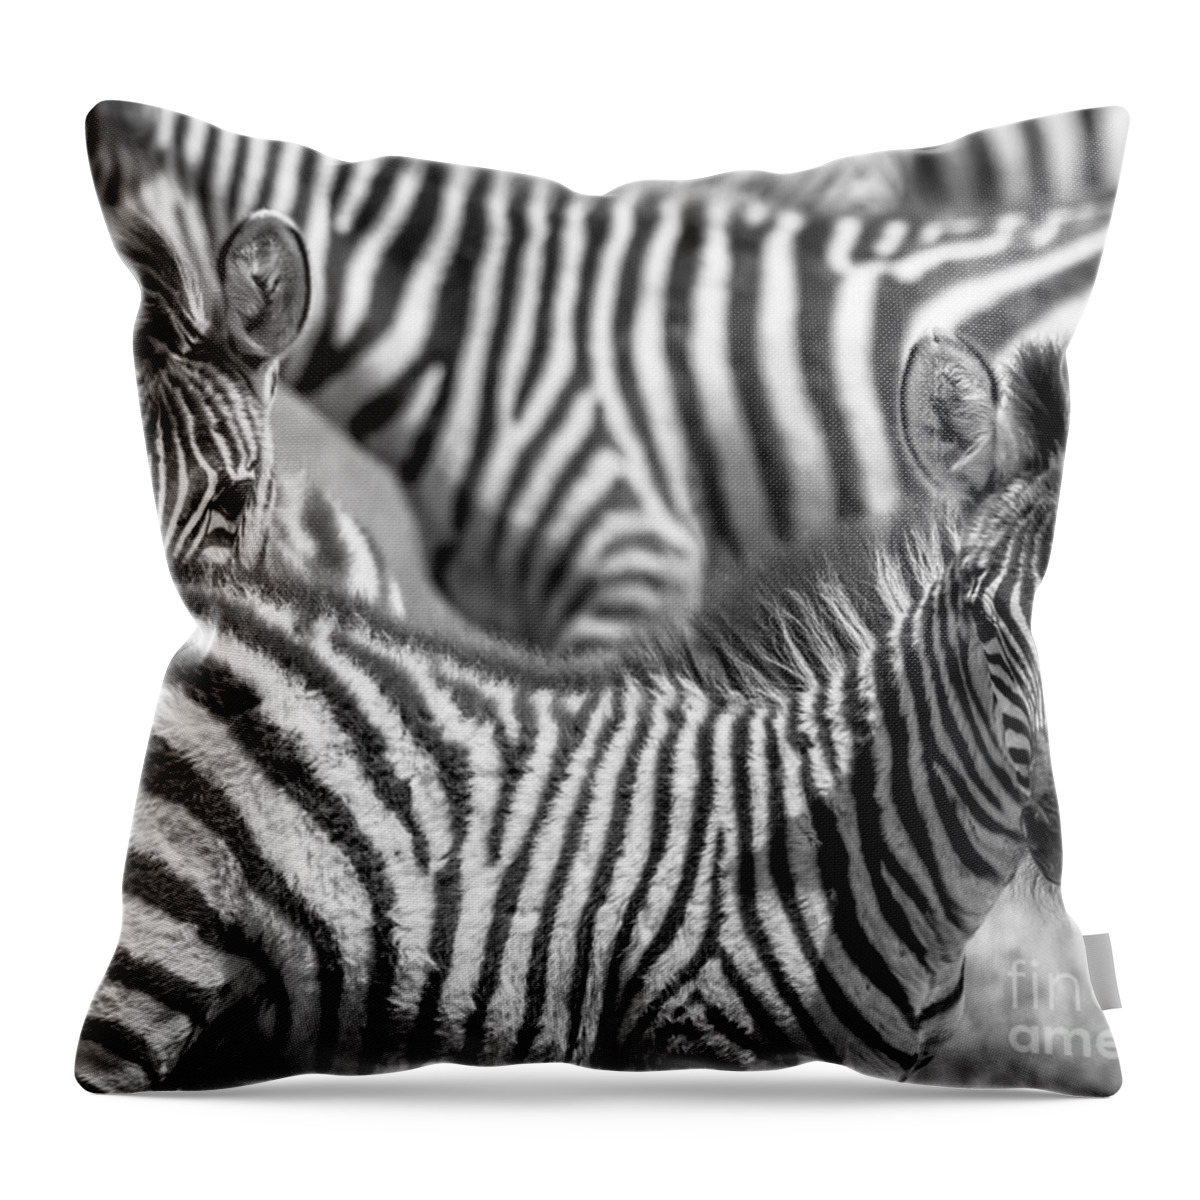 Africa Throw Pillow featuring the photograph Peek a Boo Zebra by Chris Scroggins